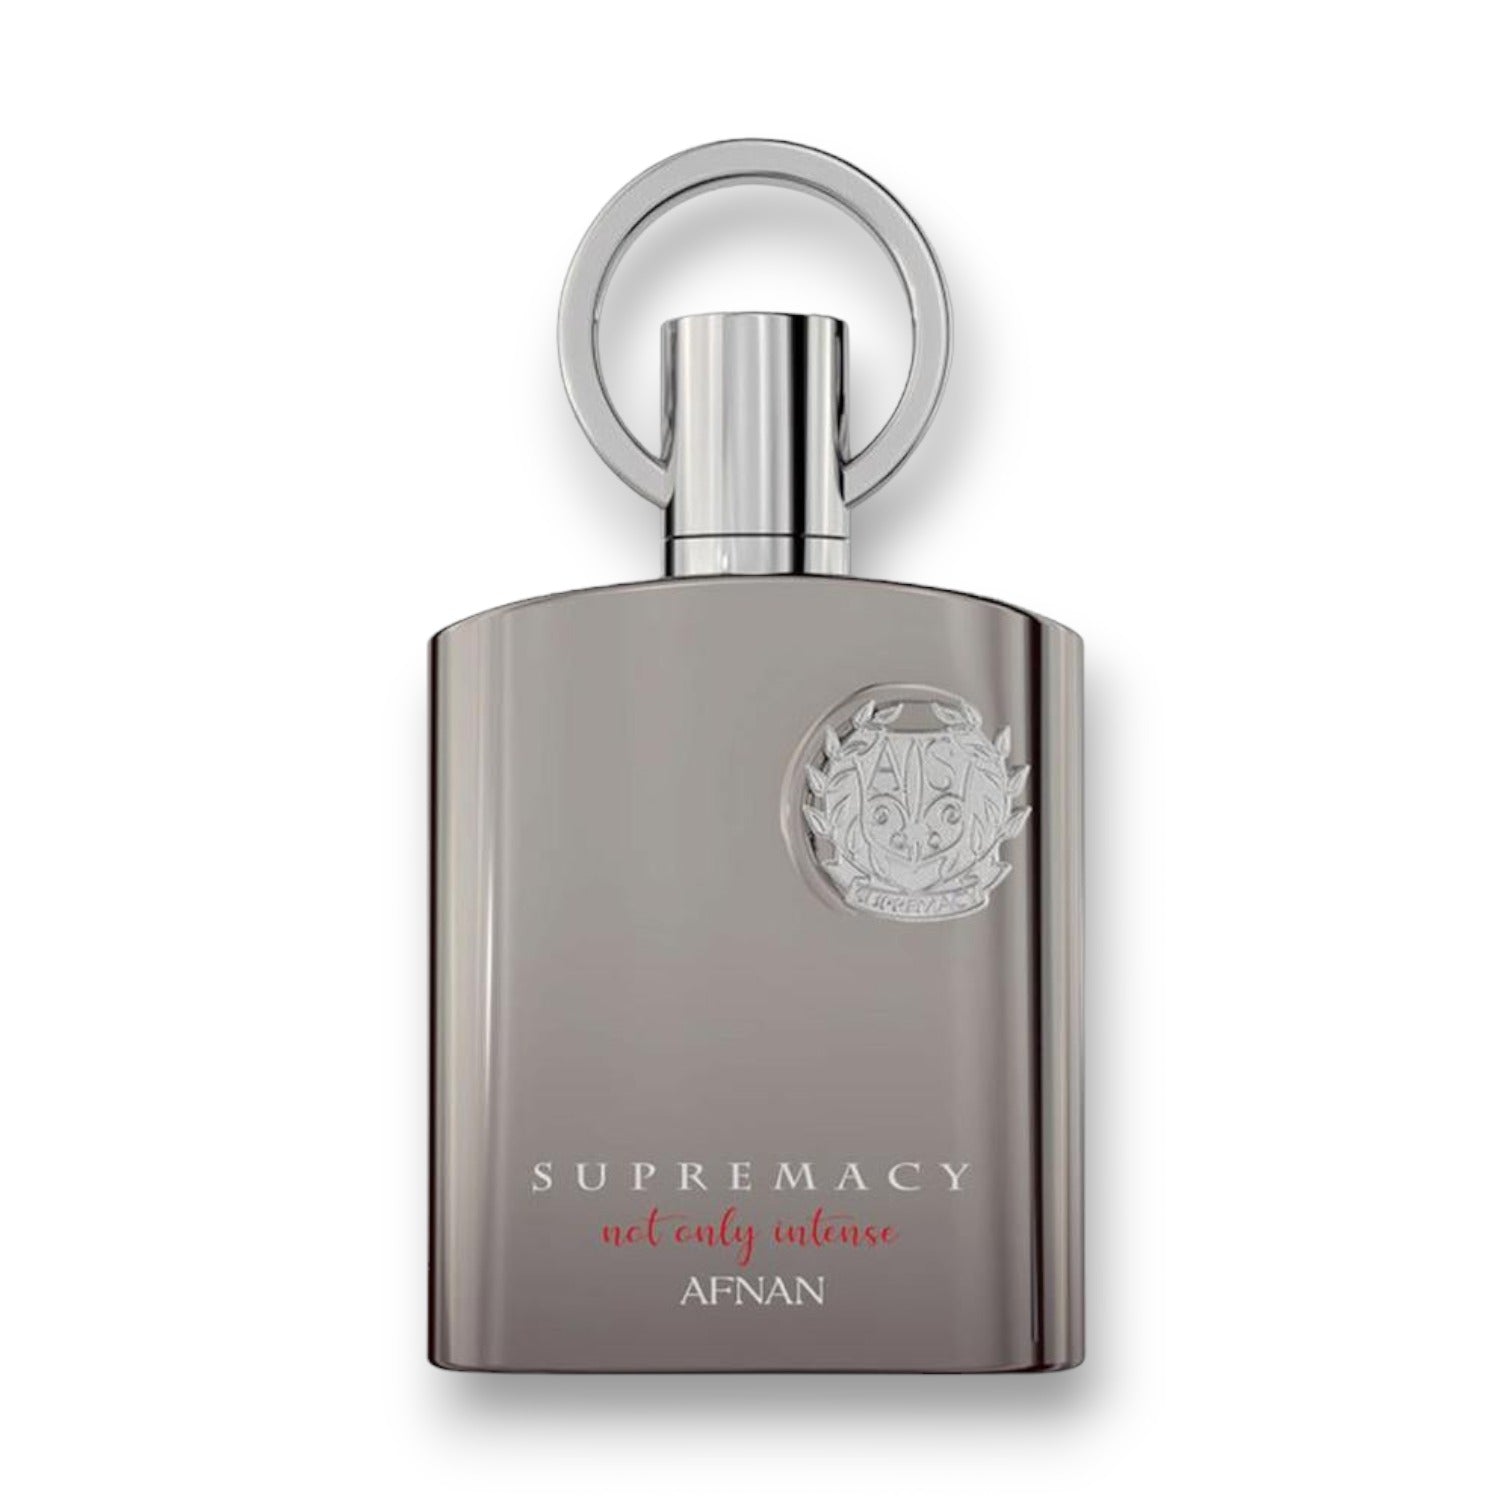 Supremacy Not Only Intense by Afnan Eau de Parfum 3.4 oz Men